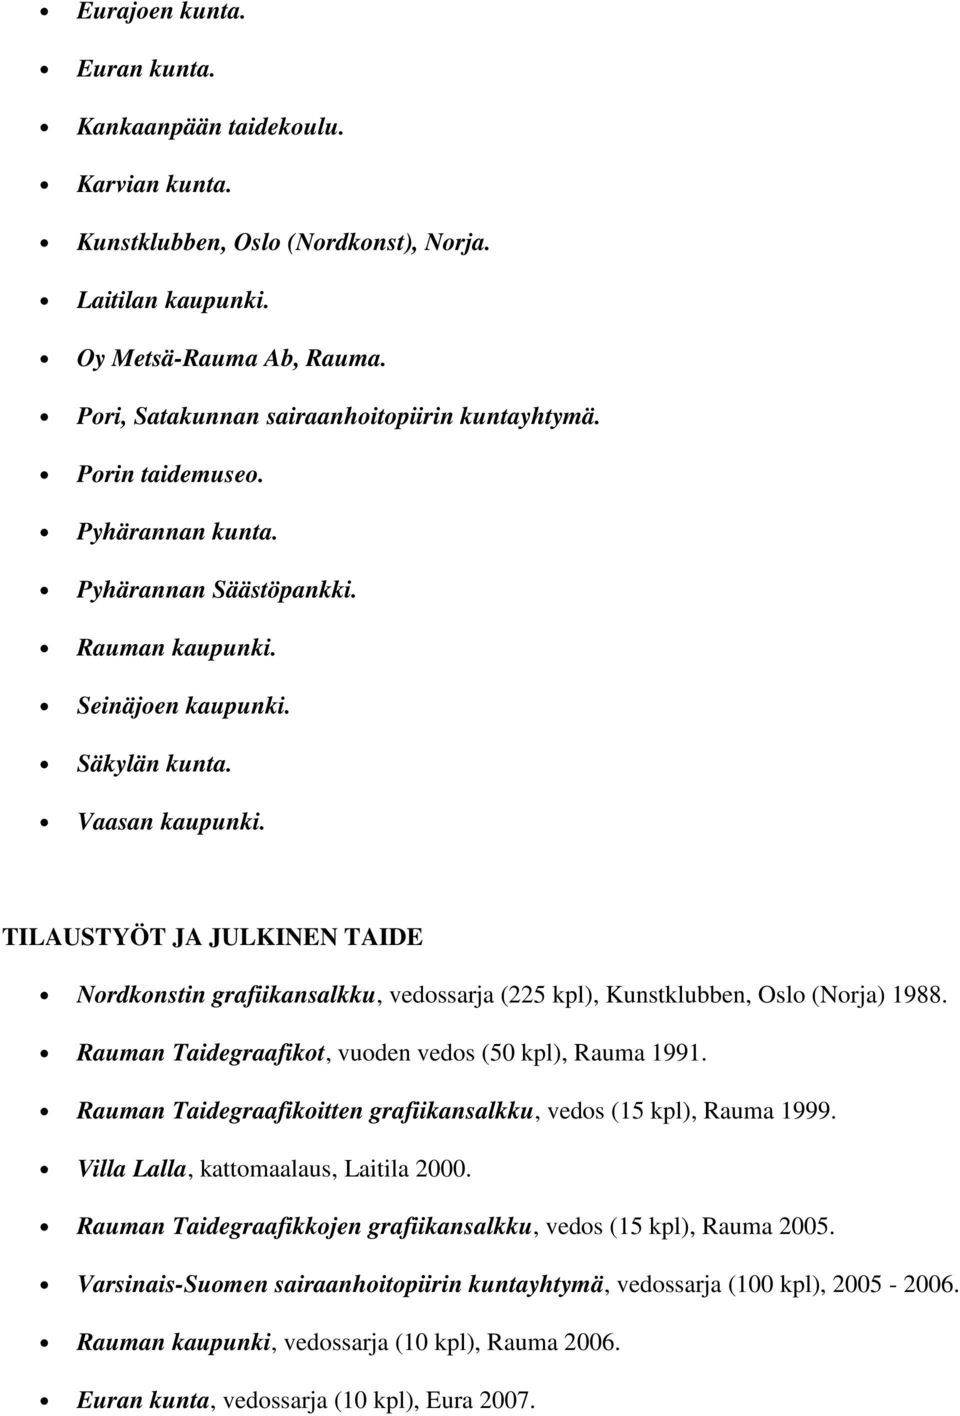 TILAUSTYÖT JA JULKINEN TAIDE Nordkonstin grafiikansalkku, vedossarja (225 kpl), Kunstklubben, Oslo (Norja) 1988. Rauman Taidegraafikot, vuoden vedos (50 kpl), Rauma 1991.